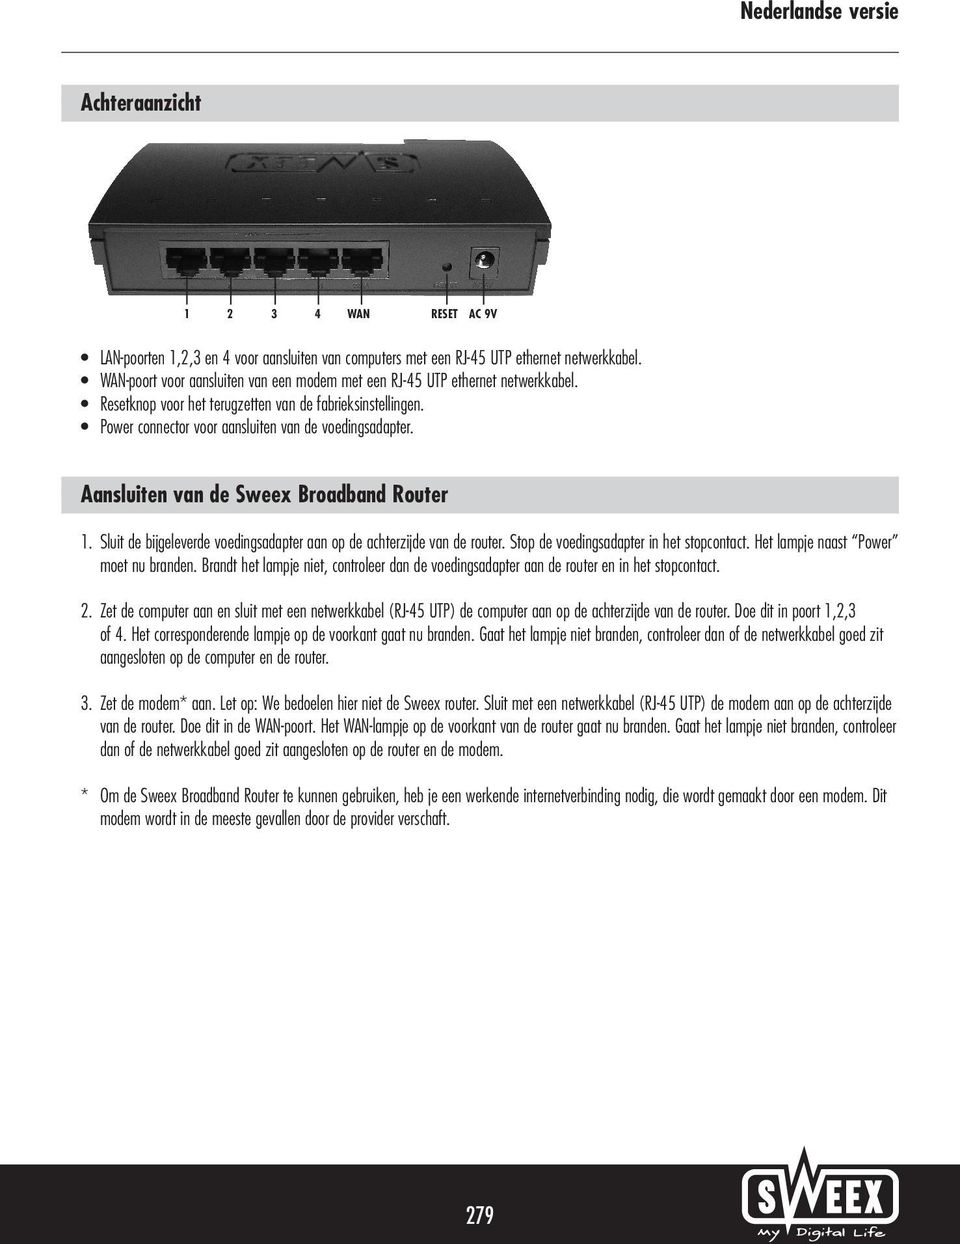 Aansluiten van de Sweex Broadband Router 1. Sluit de bijgeleverde voedingsadapter aan op de achterzijde van de router. Stop de voedingsadapter in het stopcontact.